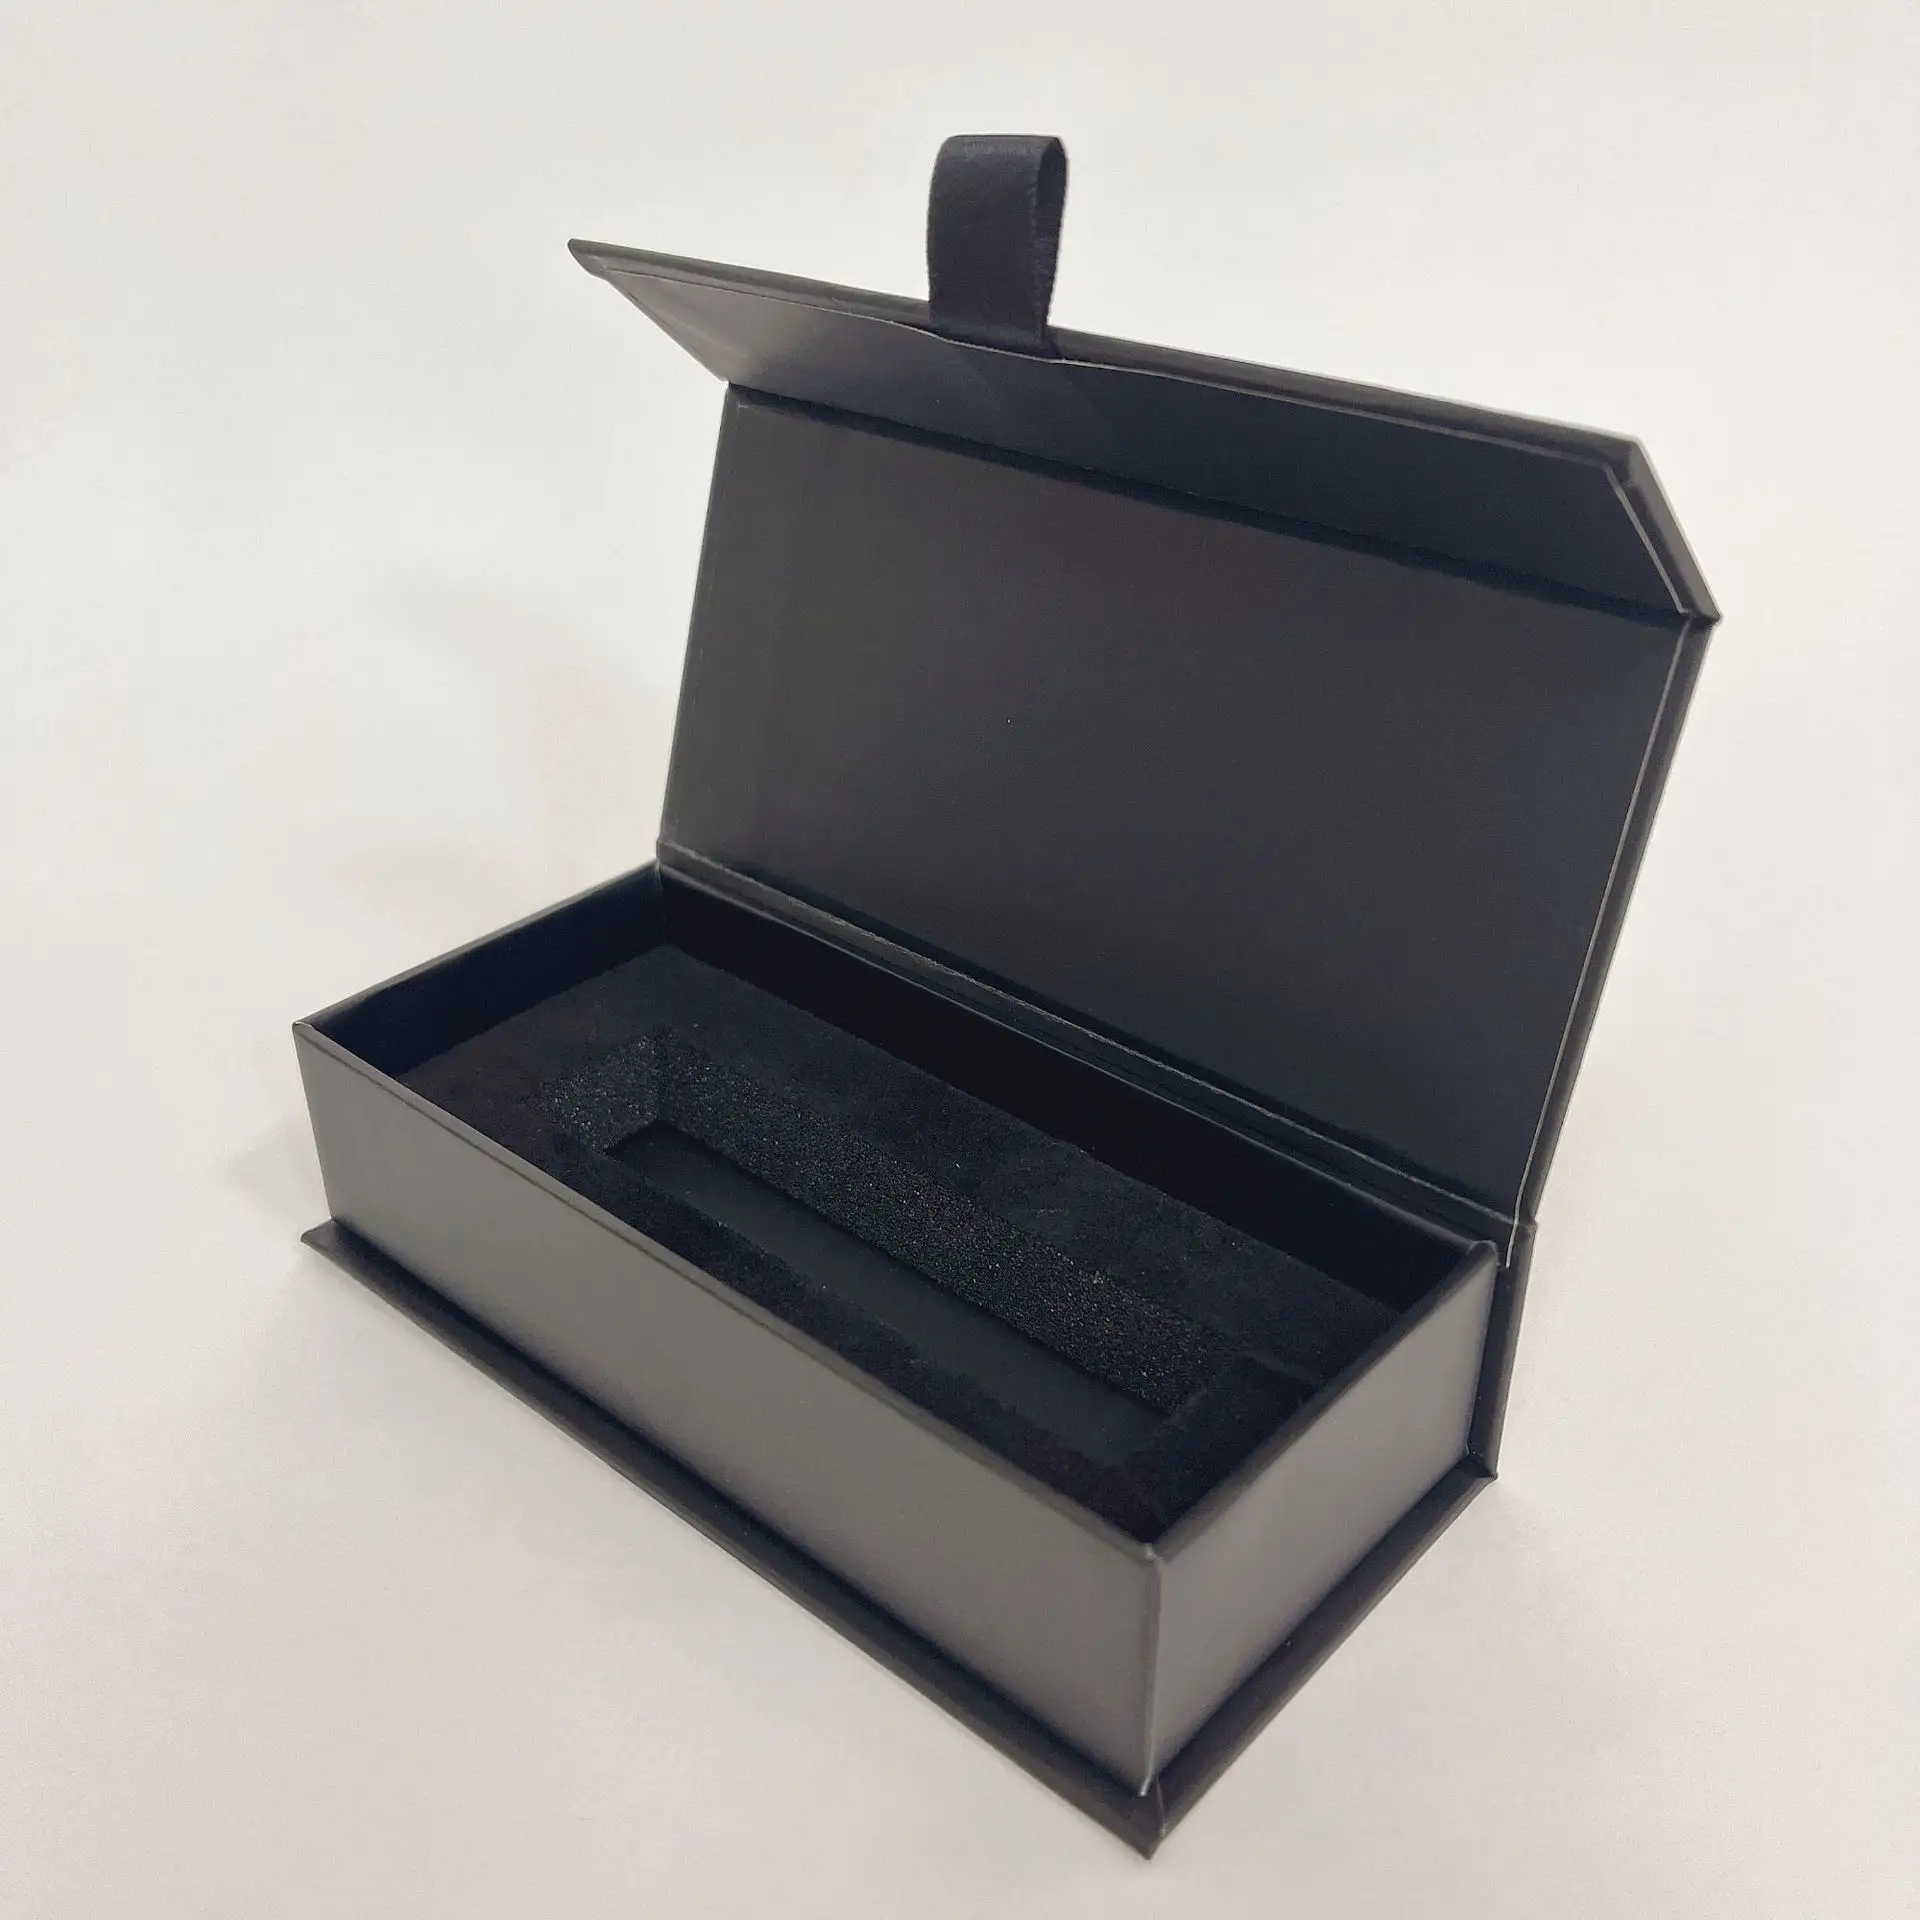 Lozione di profumo nera opaca di lusso personalizzata scatola di imballaggio regalo in cartone rigido scatola magnetica con inserto in schiuma